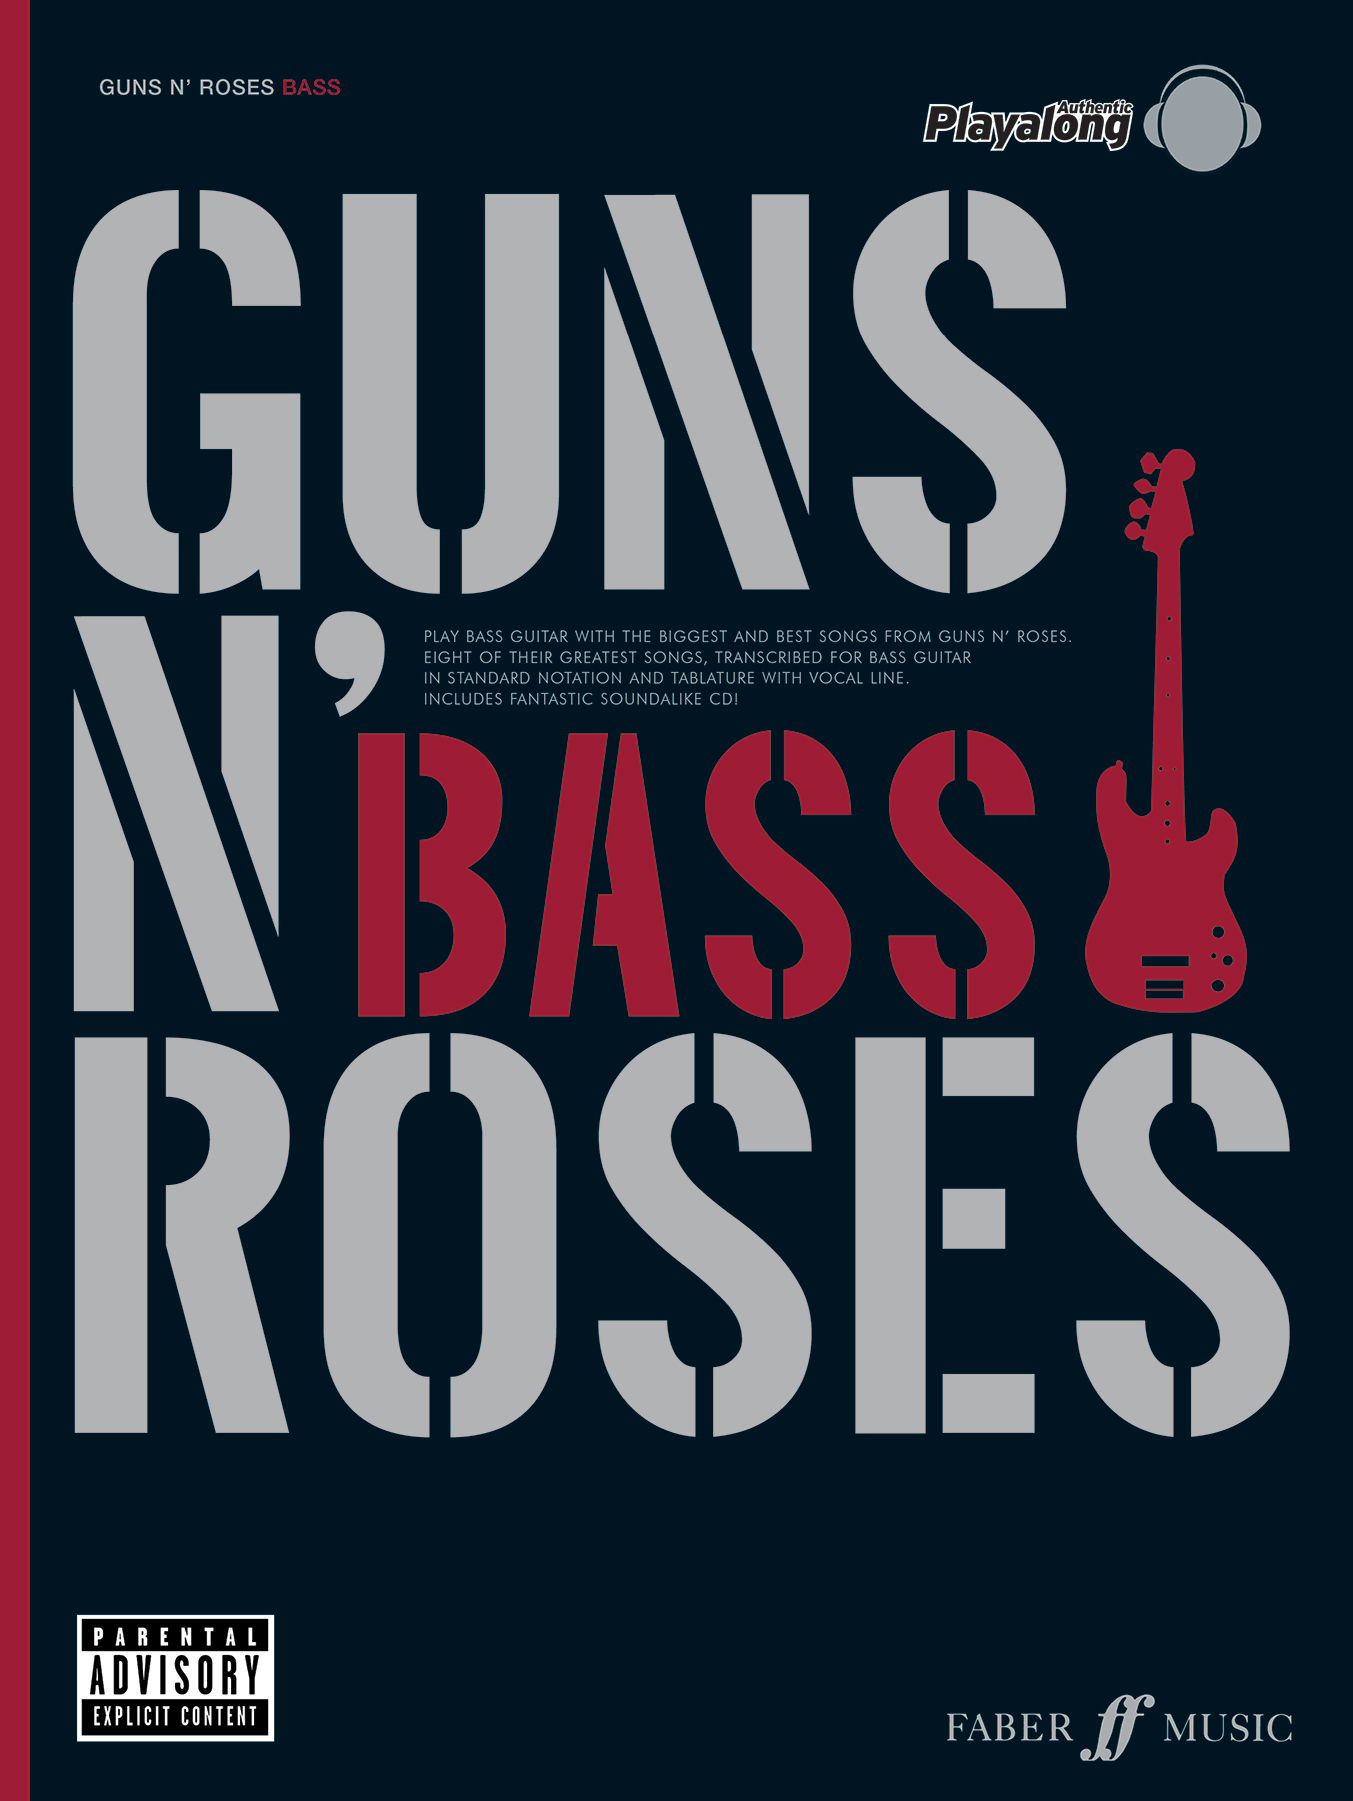 Rose bass. Guns n Roses Bass Player.